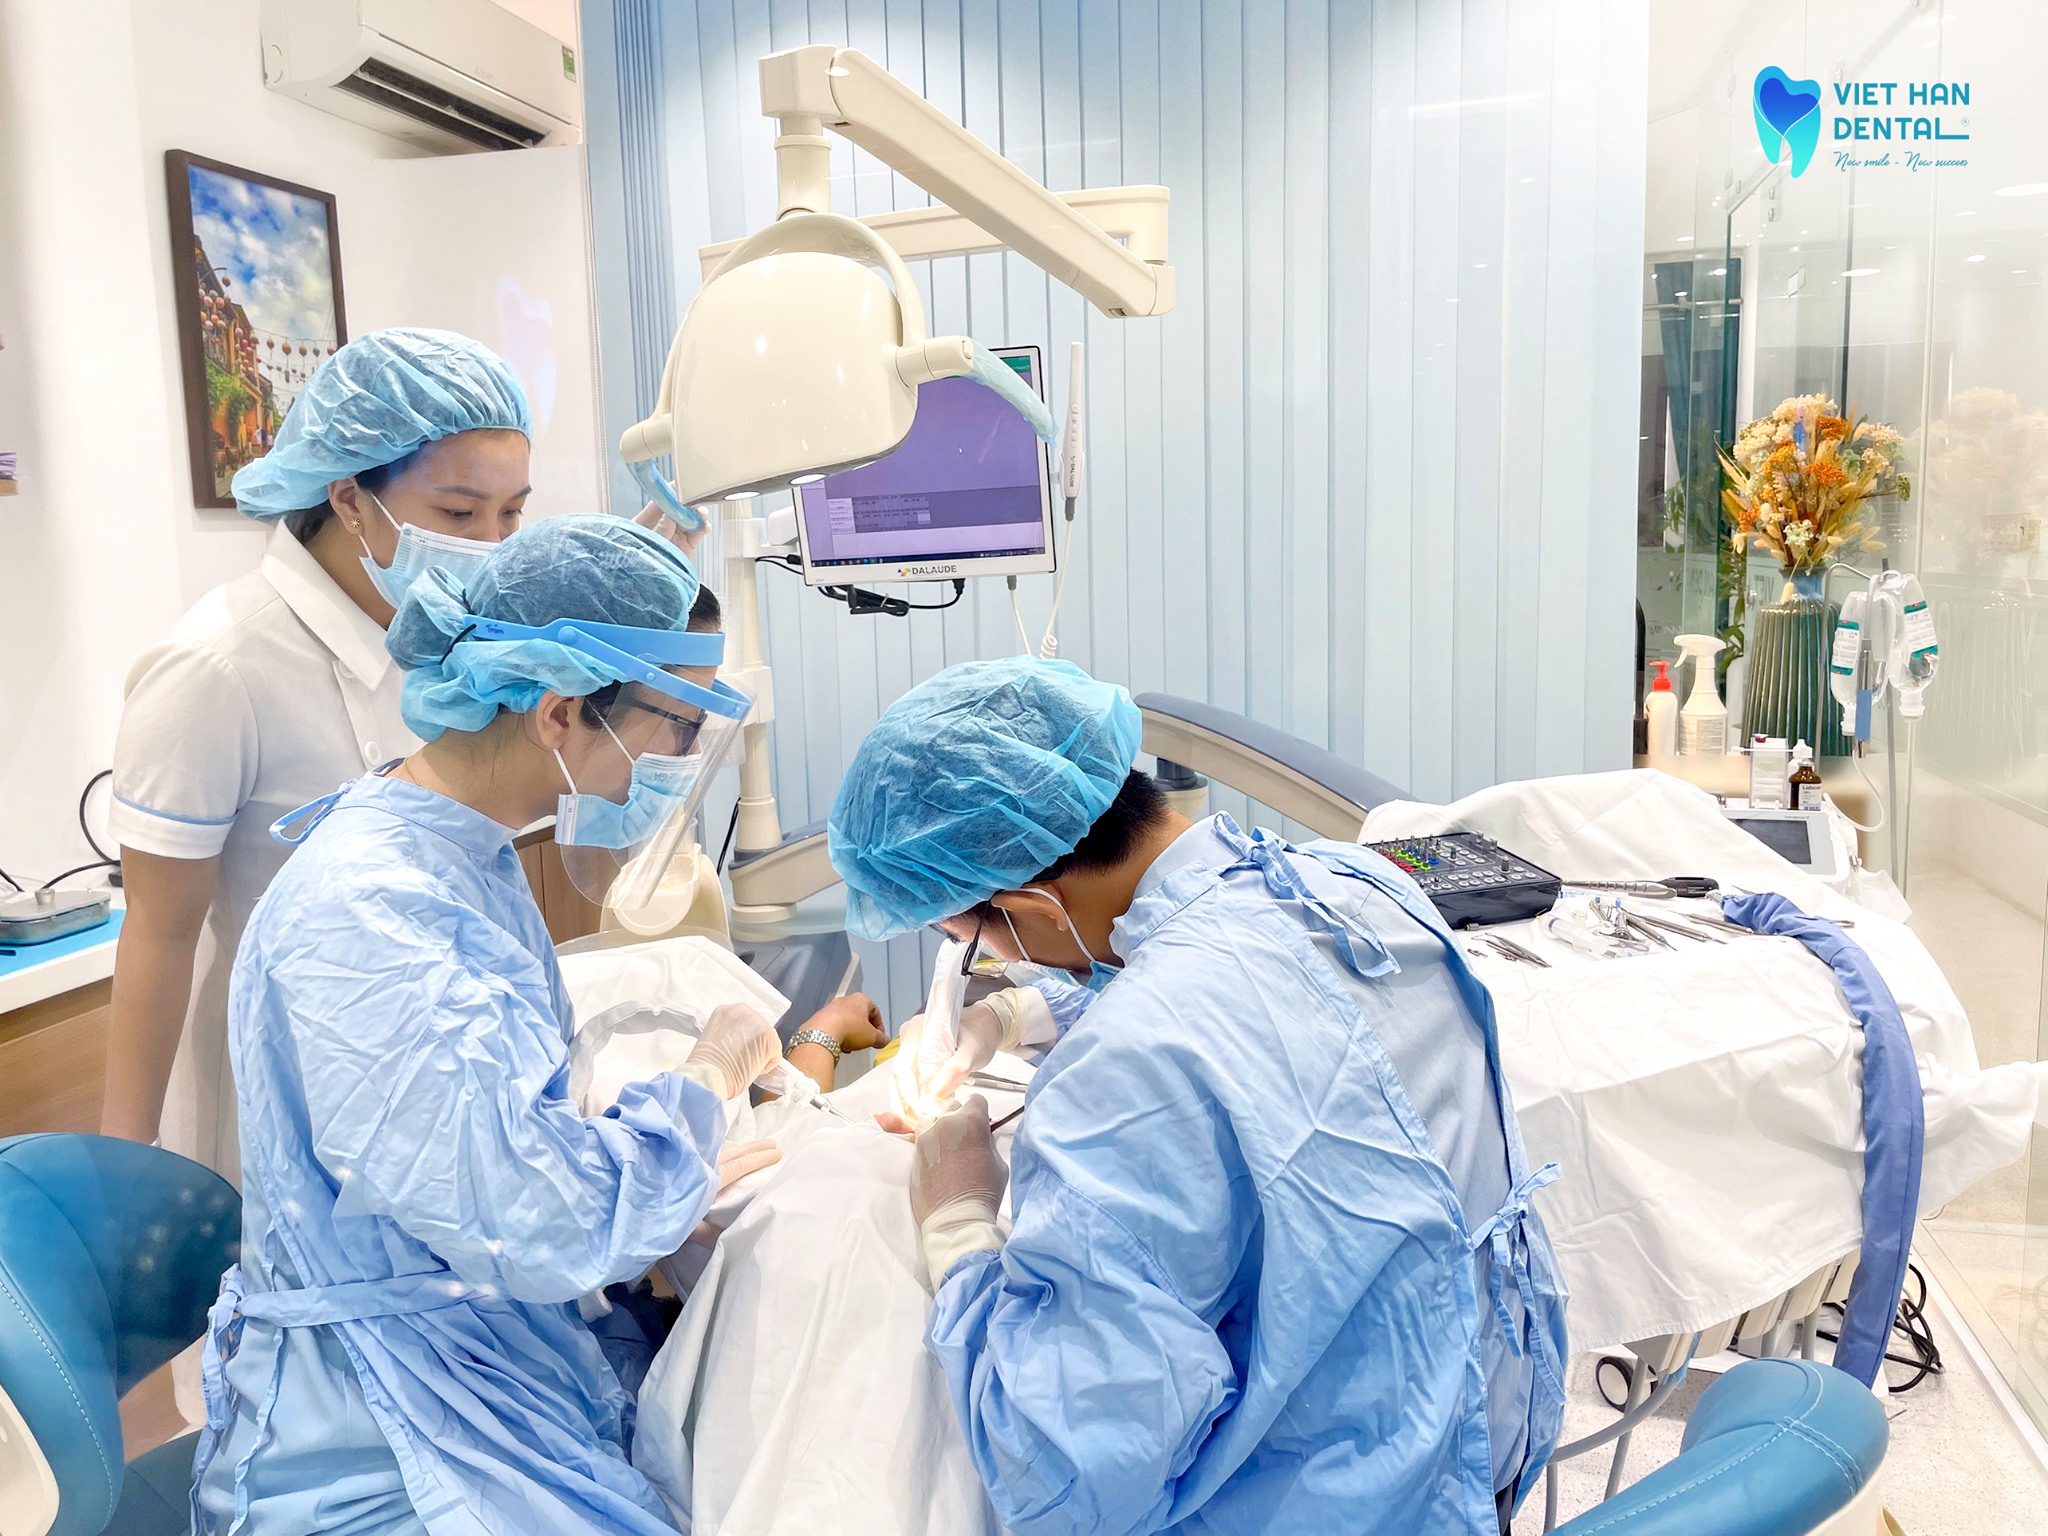 Bác sĩ đang thực hiện trồng răng Implant tại Nha khoa Việt Hàn 